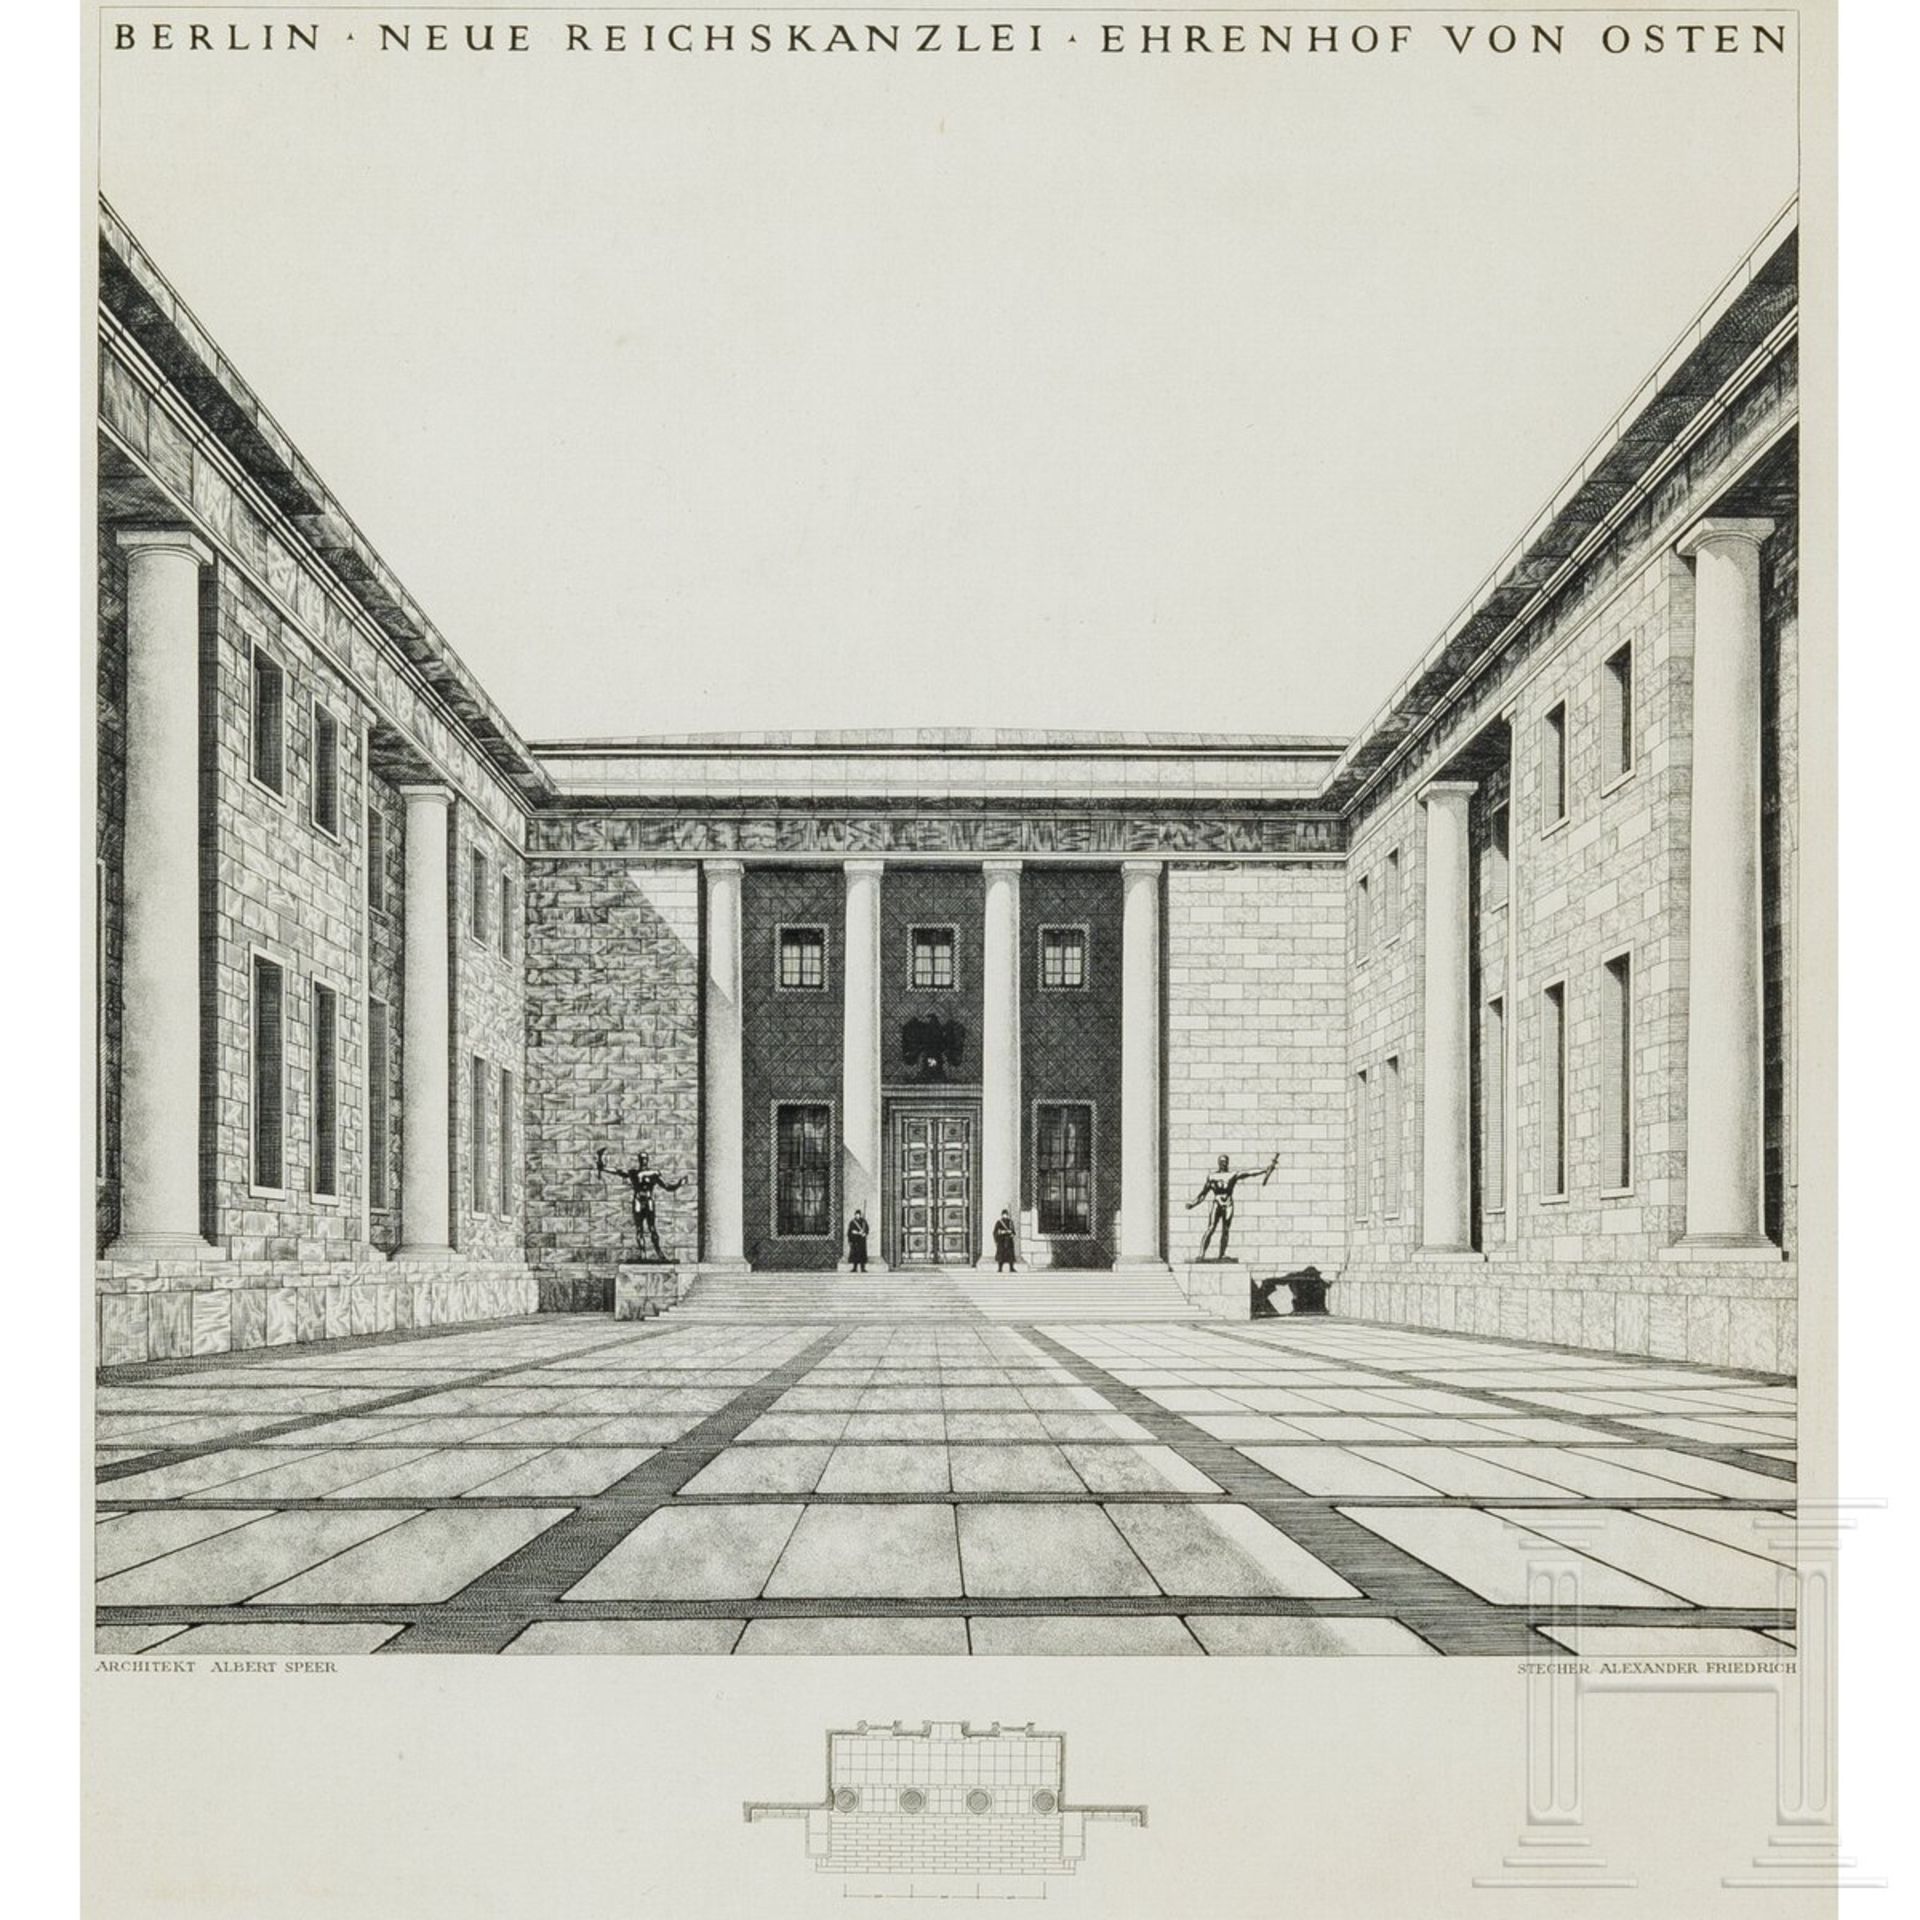 Albert Speer - zwei Stiche von Alexander Friedrich "Berlin - Neue Reichskanzlei - Ehrenhof" - Image 2 of 11